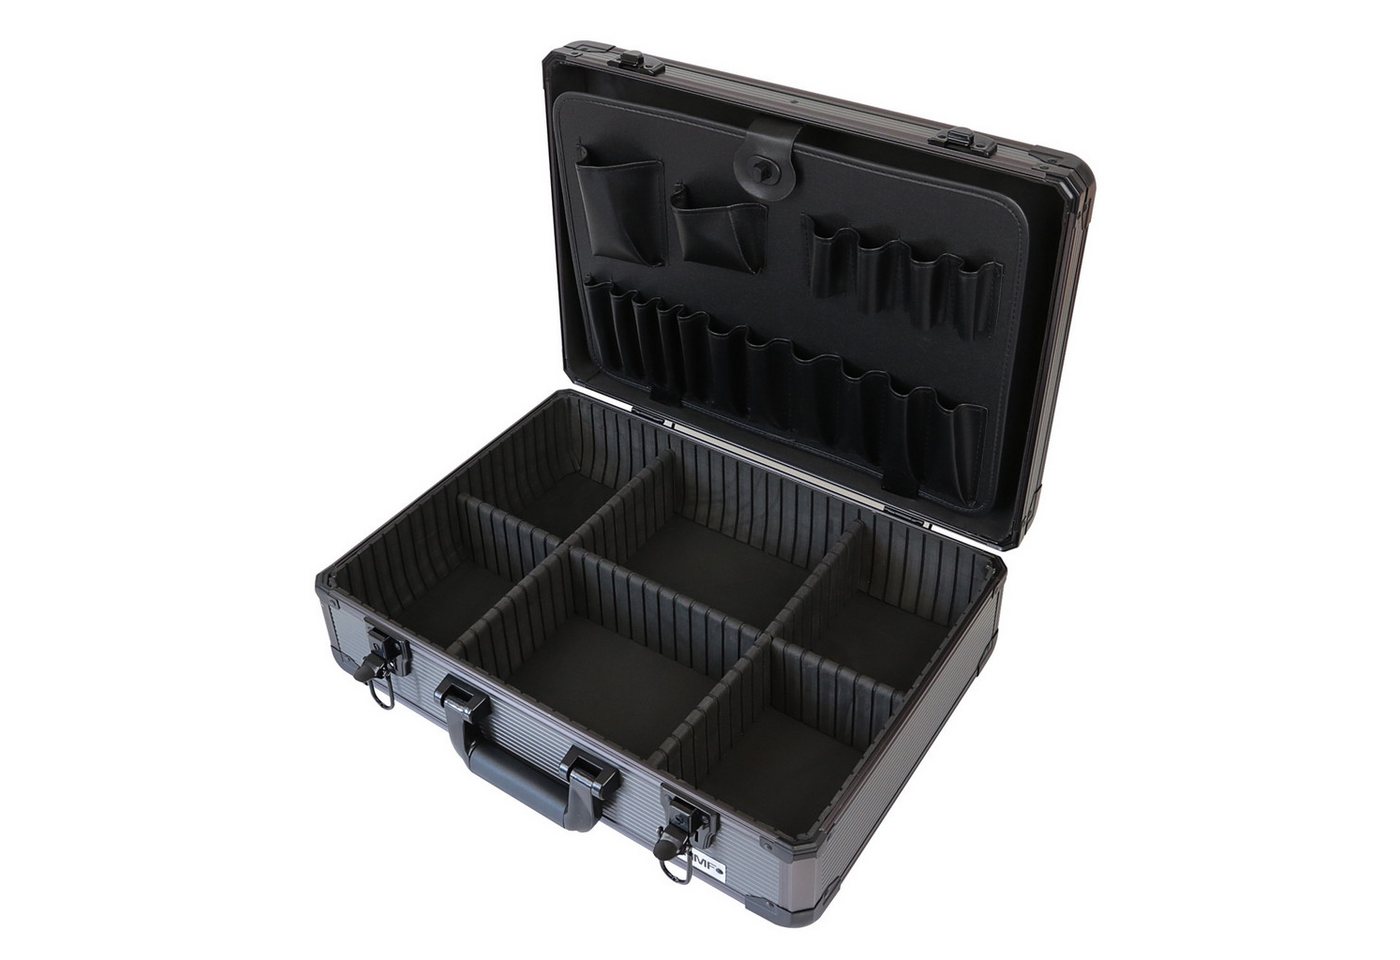 HMF Werkzeugkoffer Utensilien Koffer mit verstellbarer Facheinteilung, Transportkoffer, für Werkzeug und anderen Handwerksbedarf, 46x15x33 cm, anthrazit von HMF